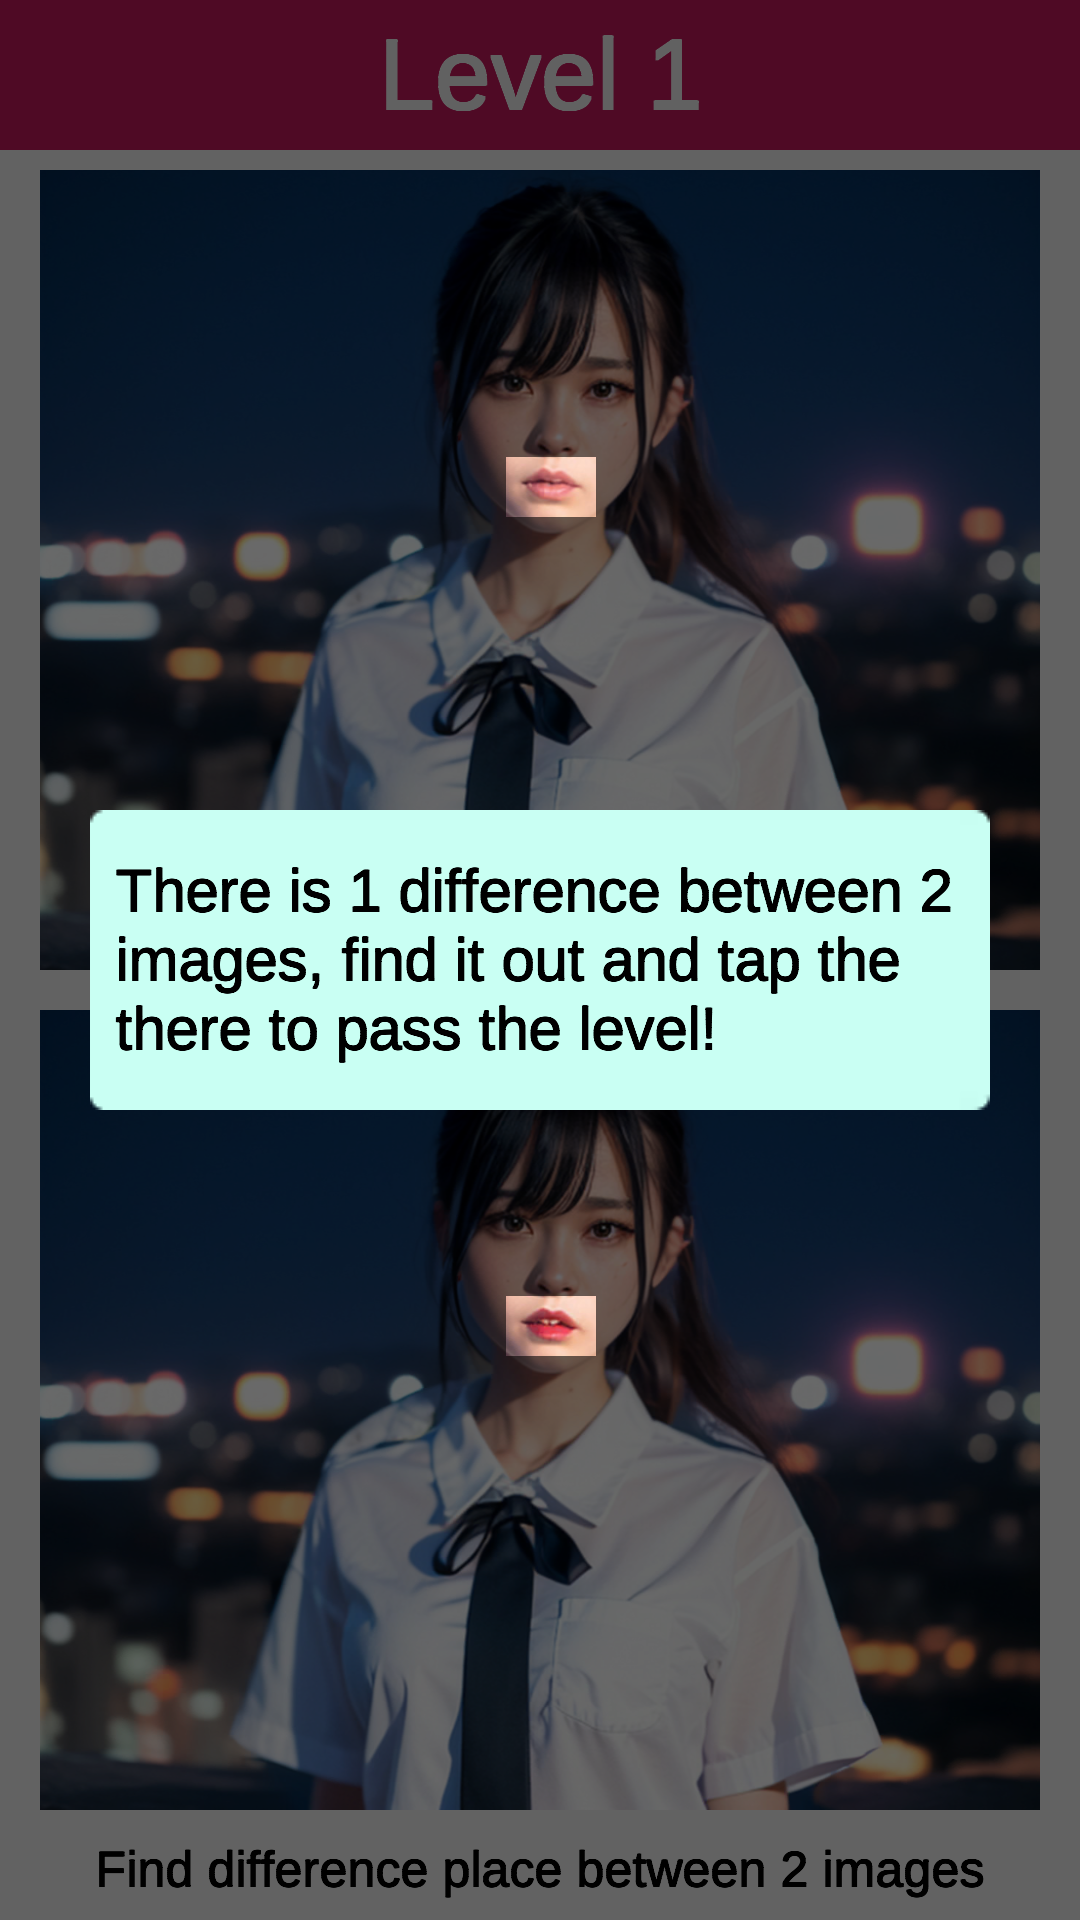 Screenshot 1 of Garota AI: Encontre a diferença 1.15